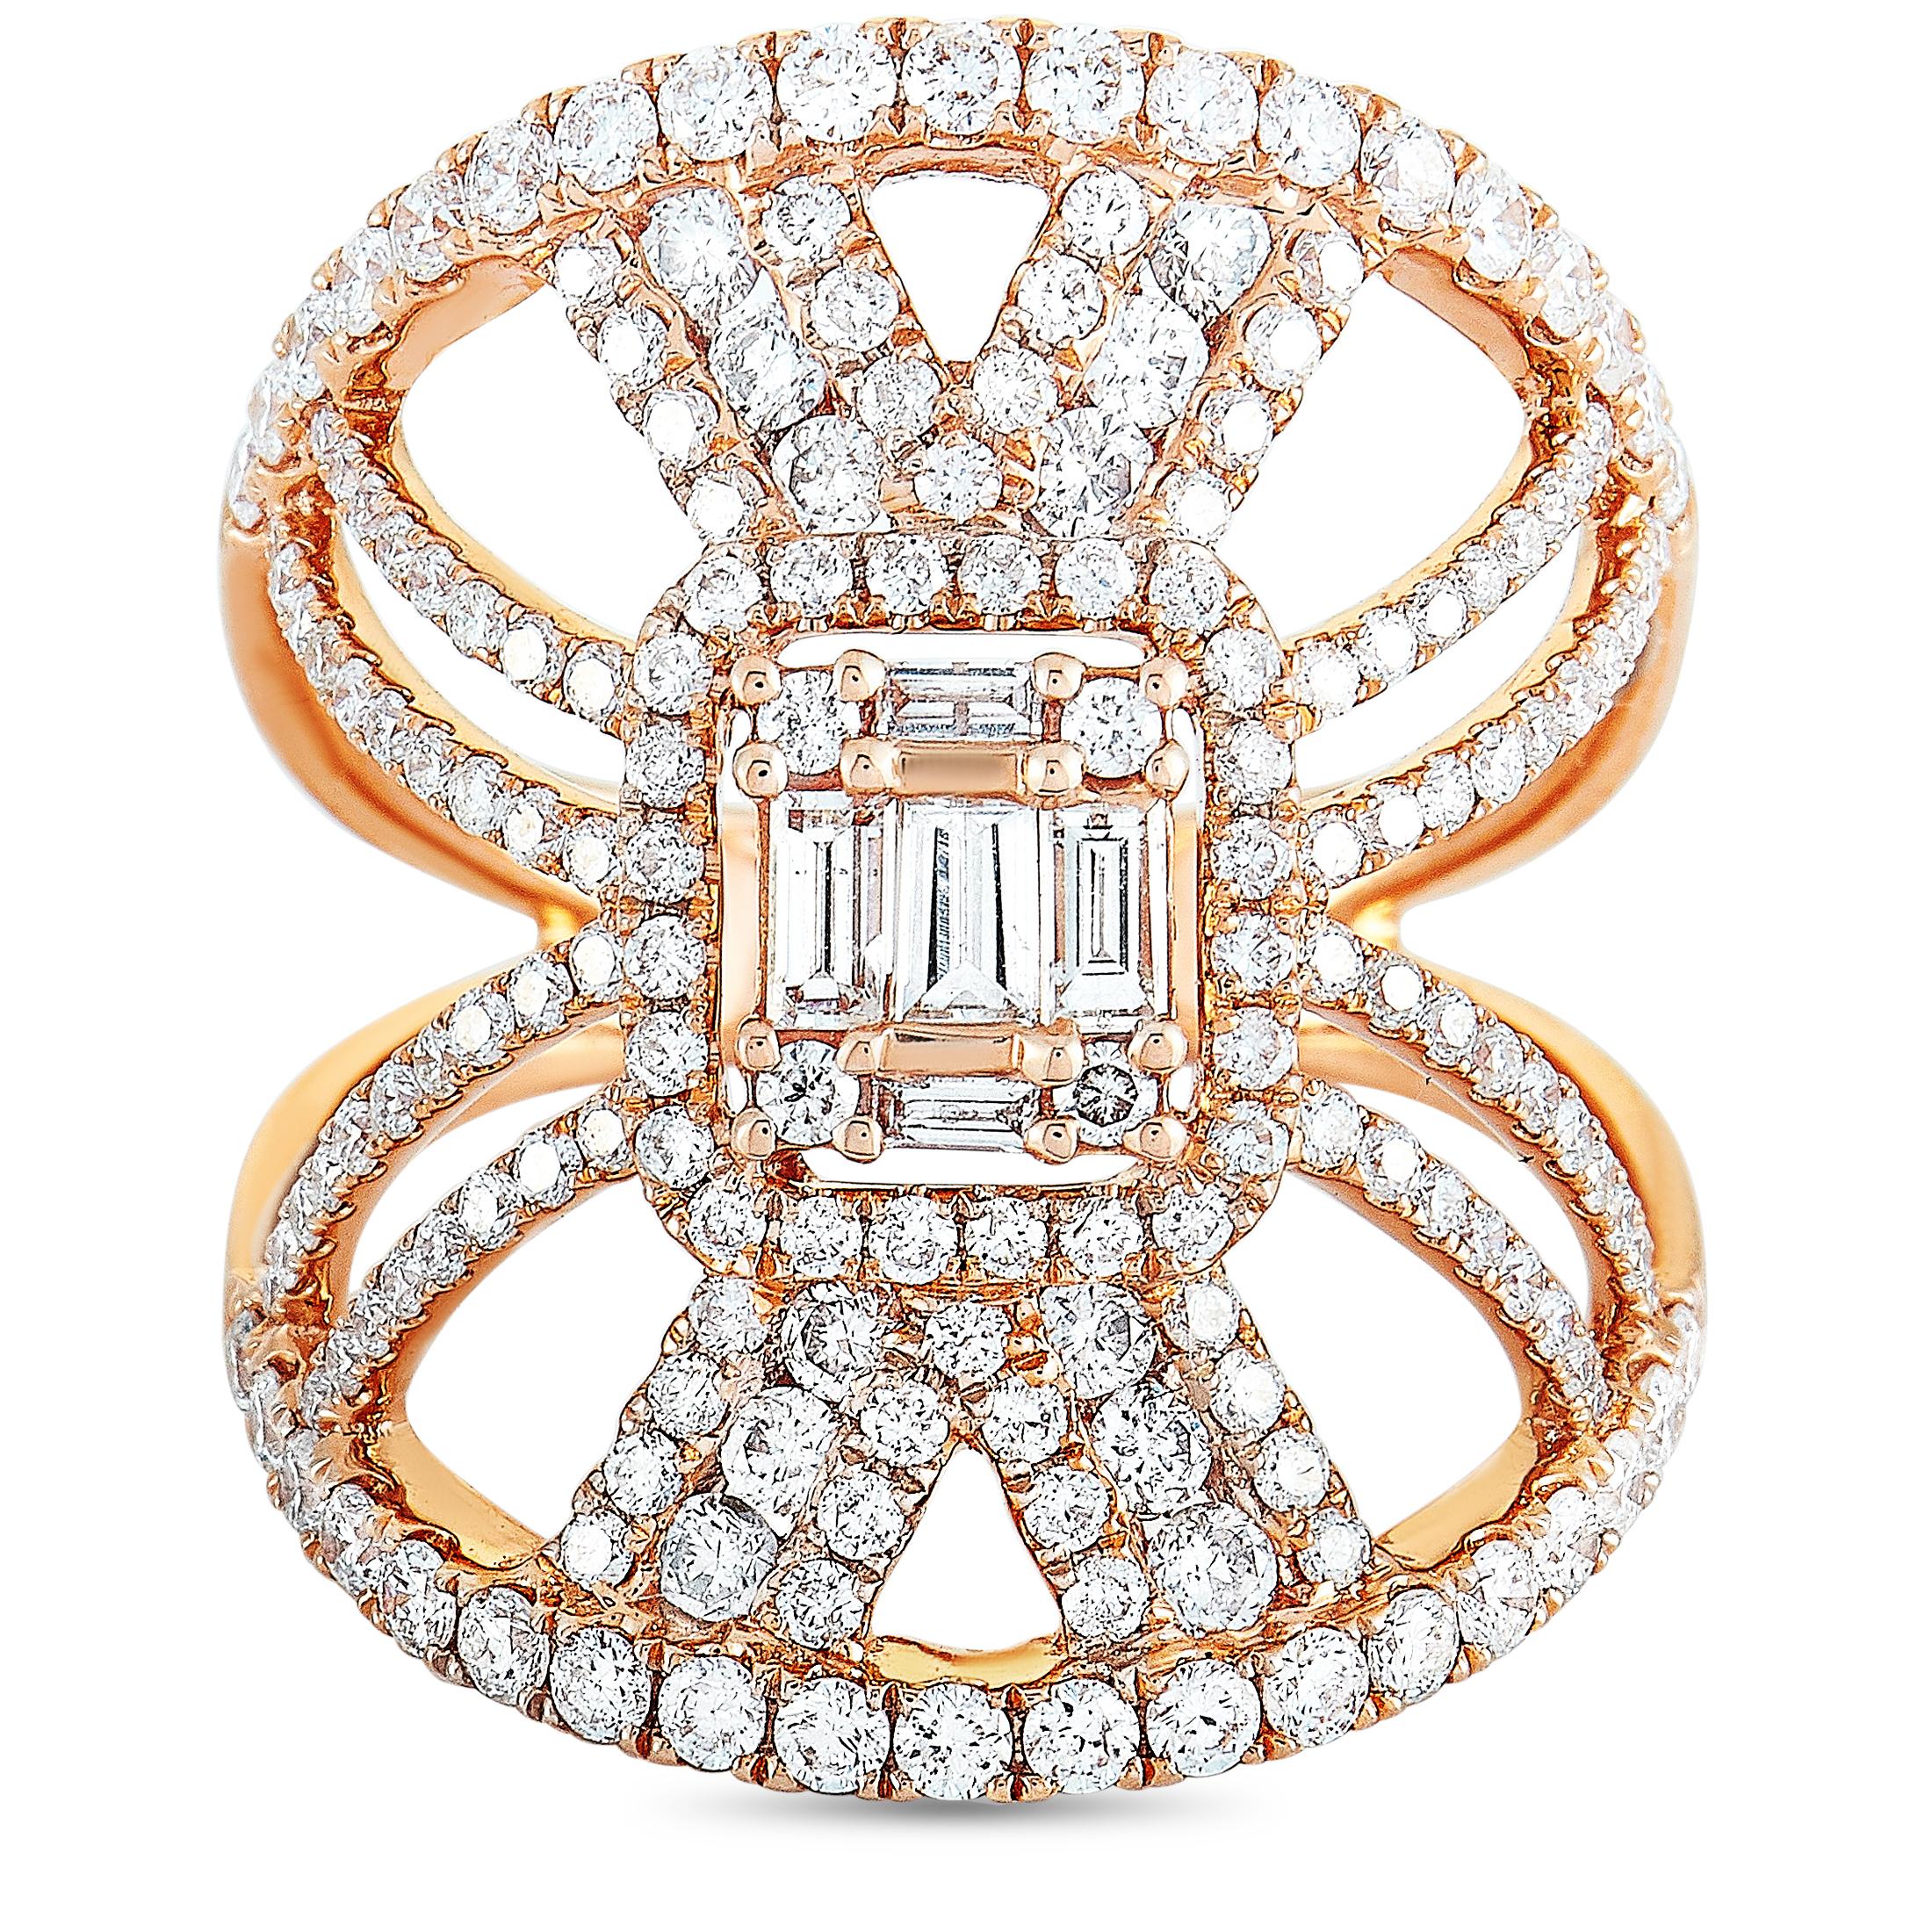 LB Exclusive 18 Karat Rose Gold Diamond Cocktail Ring 2